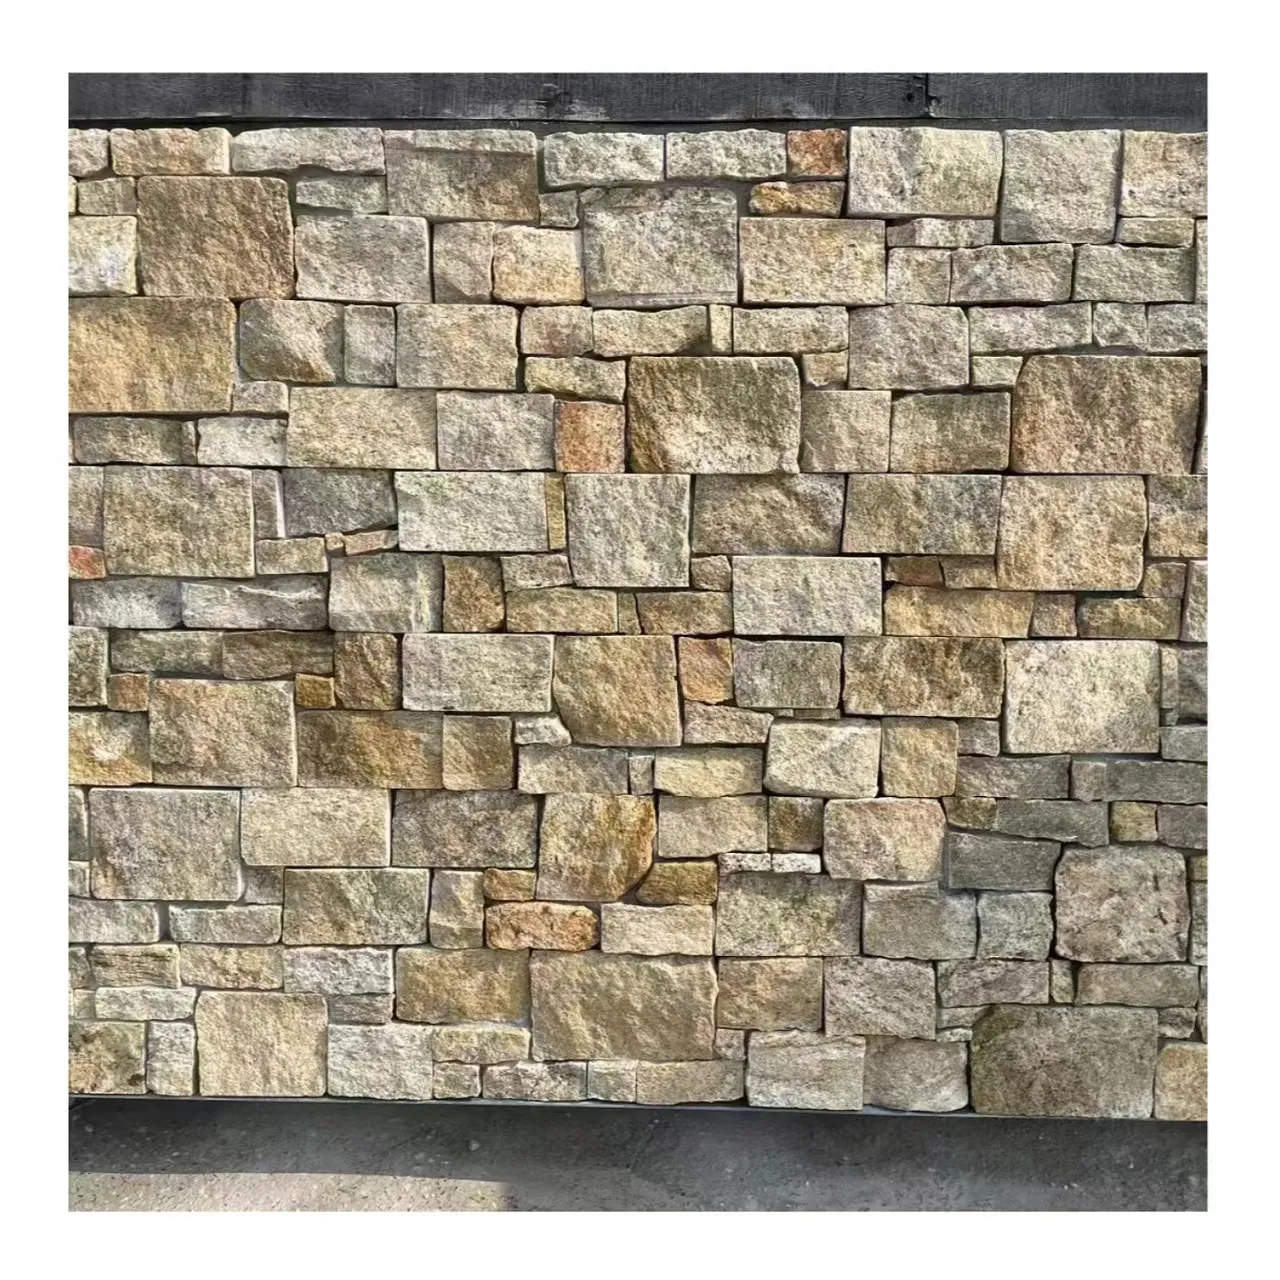 Batu Kapur batu alam kuartzite kuning Freeform eksterior dekoratif batu Veneer ditumpuk batu penutup Dinding